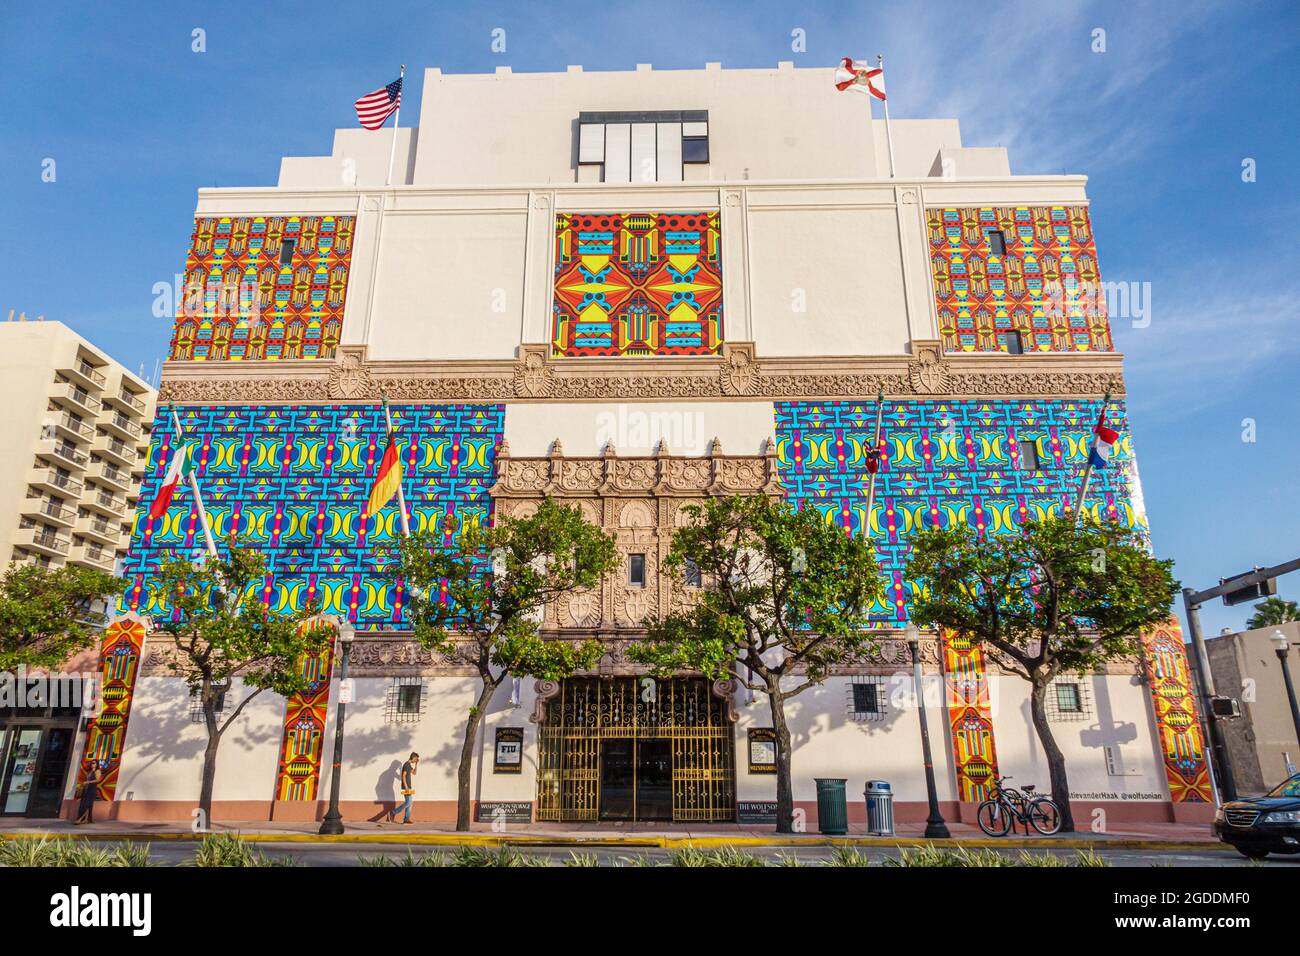 Miami Beach Florida, Wolfsonian-FIU Museum, Kunstdesign außen vor modernem holländischem Design, Christie van der Haak Artist Installation Building Wrap, Stockfoto